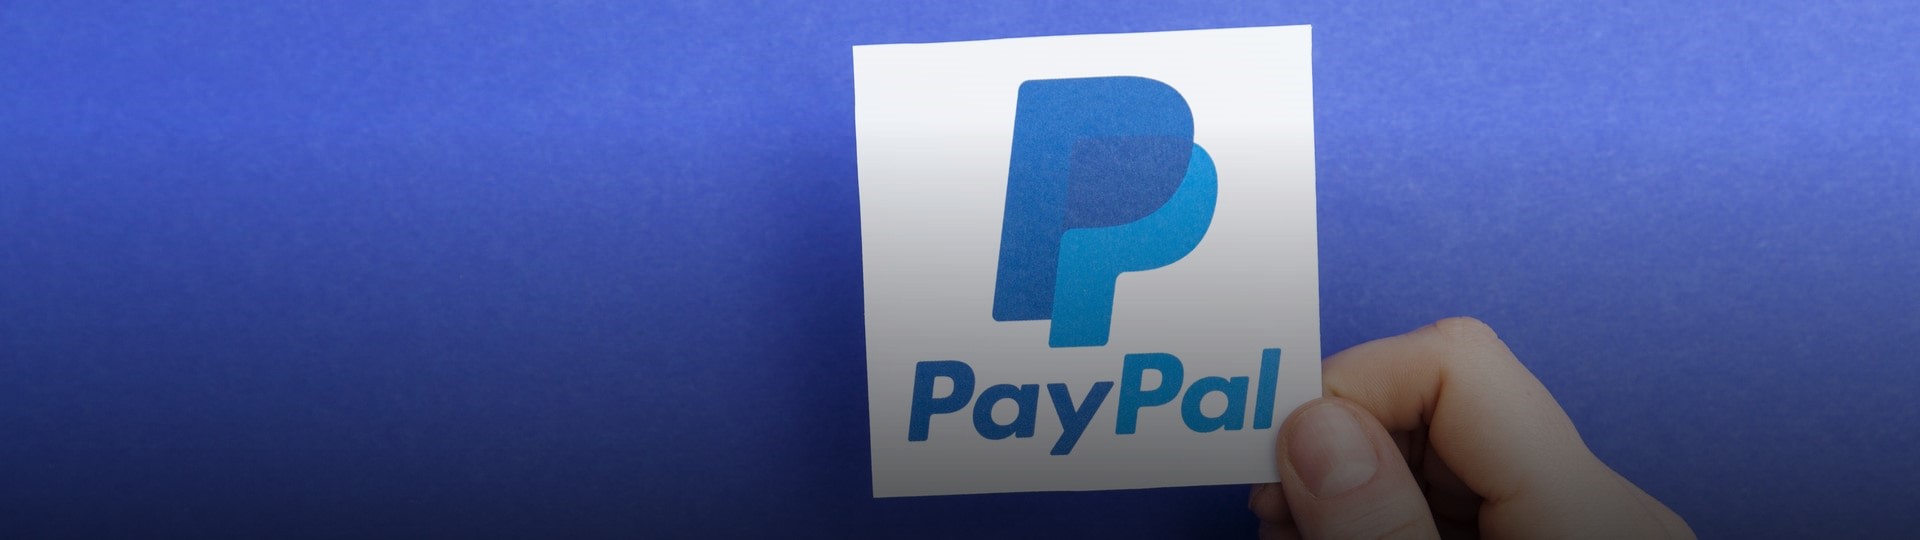 PayPal zvýšil zisk o 121 procent, pomohl mu koronavirus